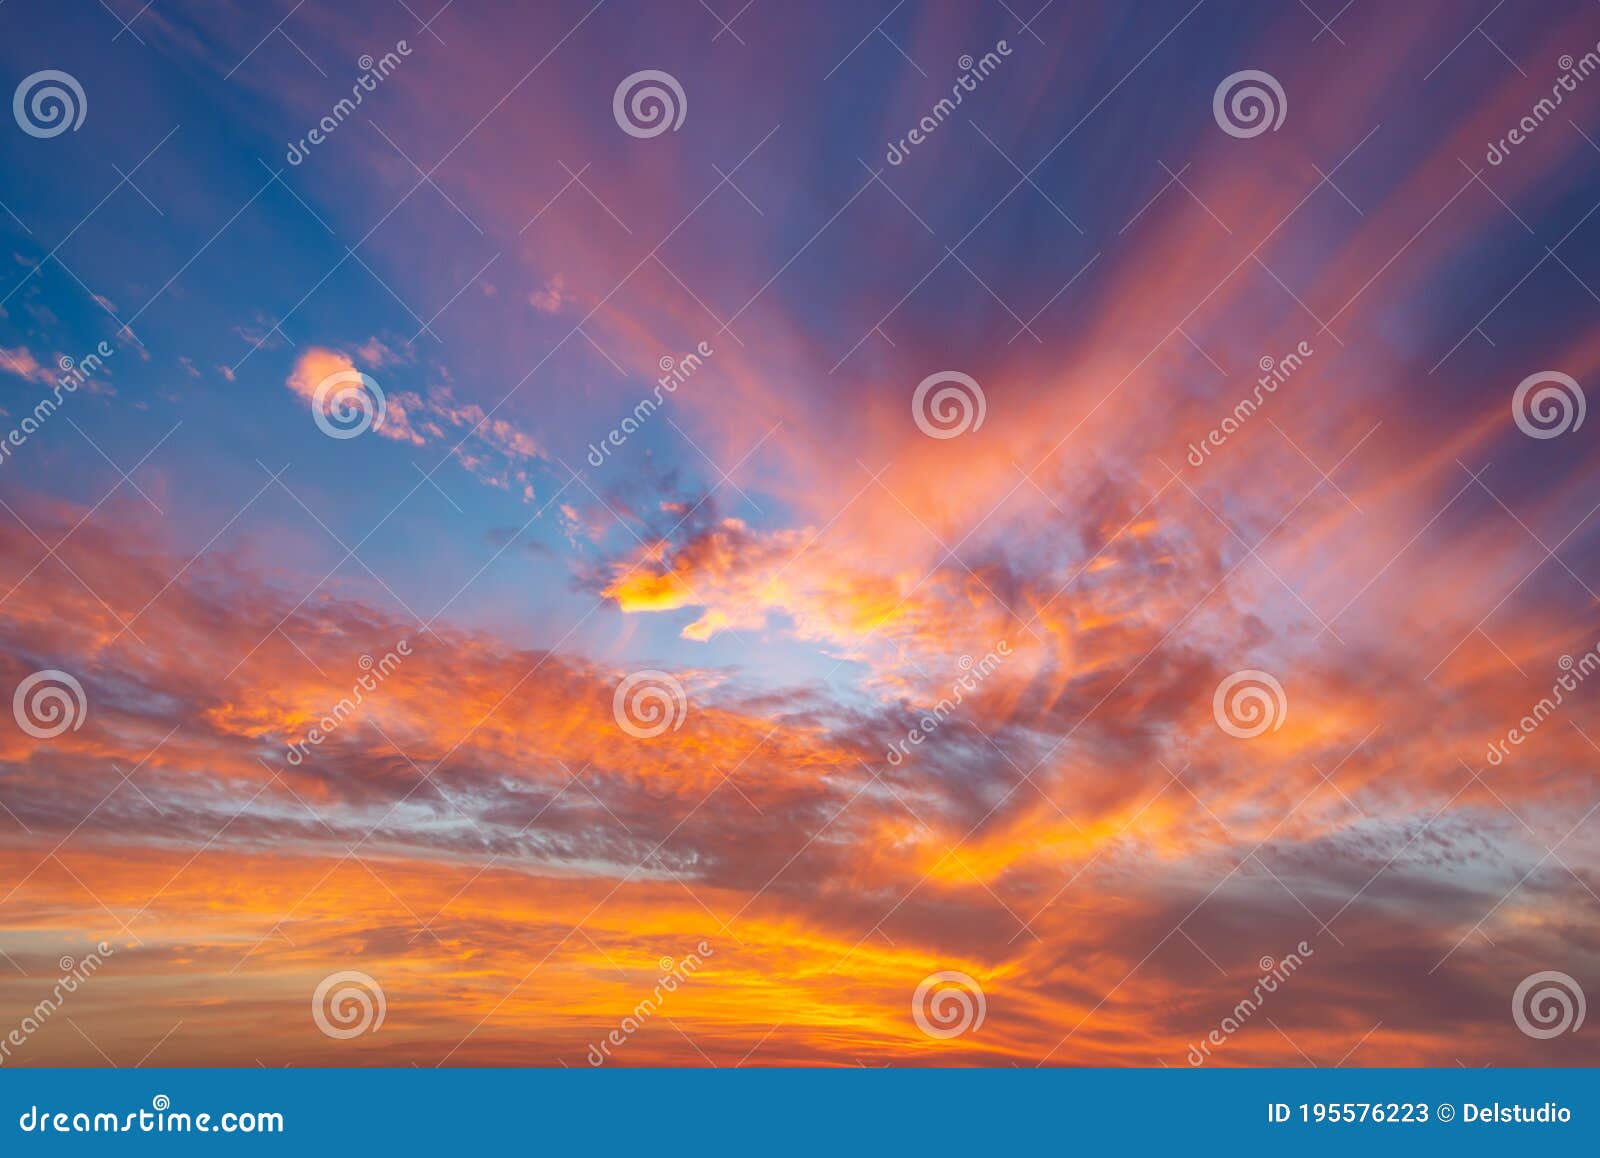 Cảm nhận được sự lung linh và đầy màu sắc của một hoàng hôn lung linh với bức ảnh dramatic orange sky with clouds sunset background stock image. Cảm xúc thăng hoa sẽ khiến bạn muốn xem bức ảnh này một lần nữa, để tận hưởng những khoảnh khắc đẹp nhất của ngày hôm nay.